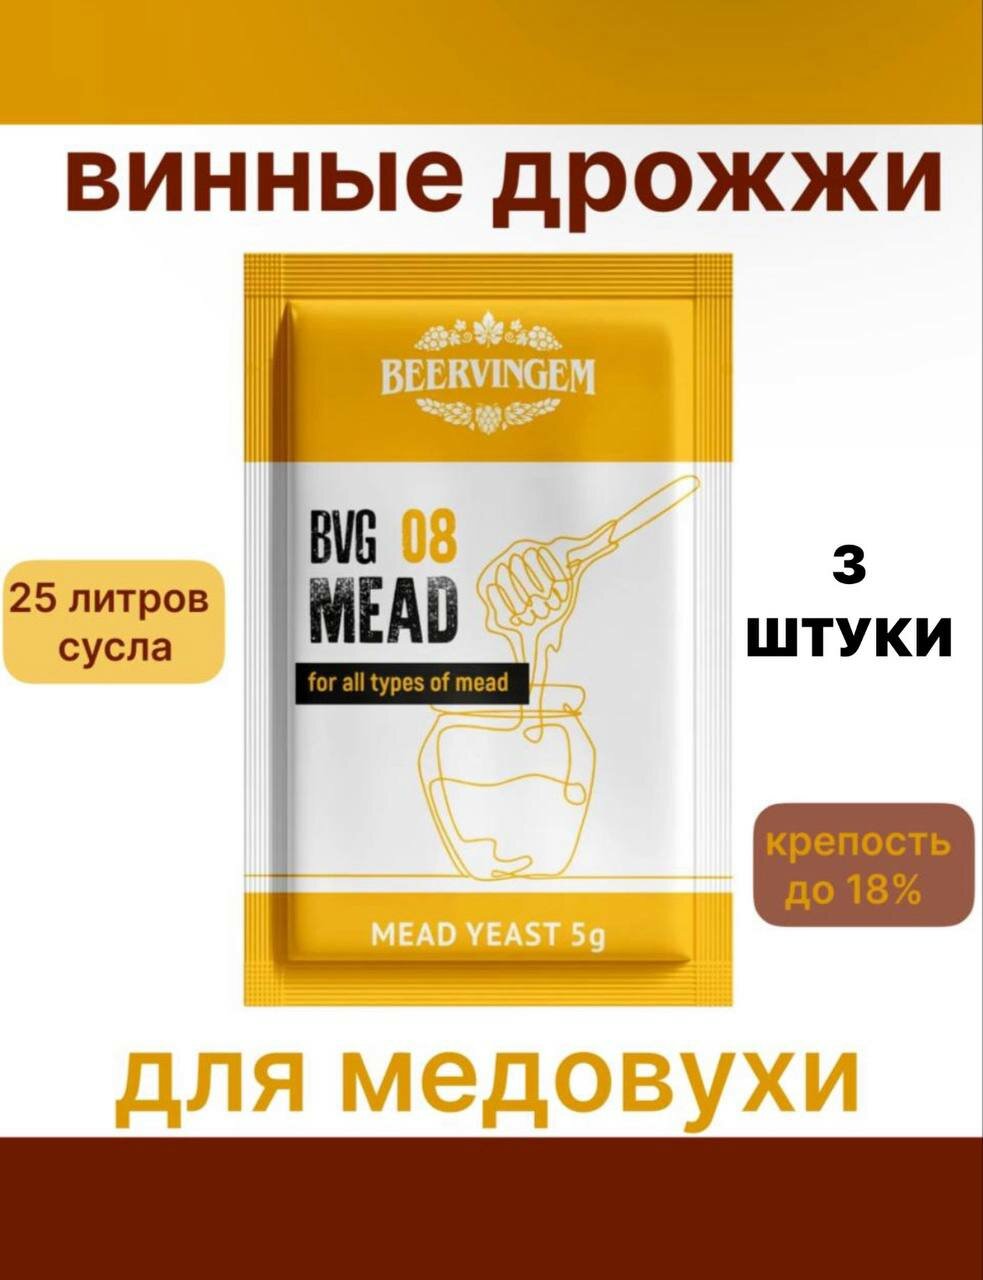 Винные дрожжи Beervingem для медовухи "Mead BVG-08"-3 шт